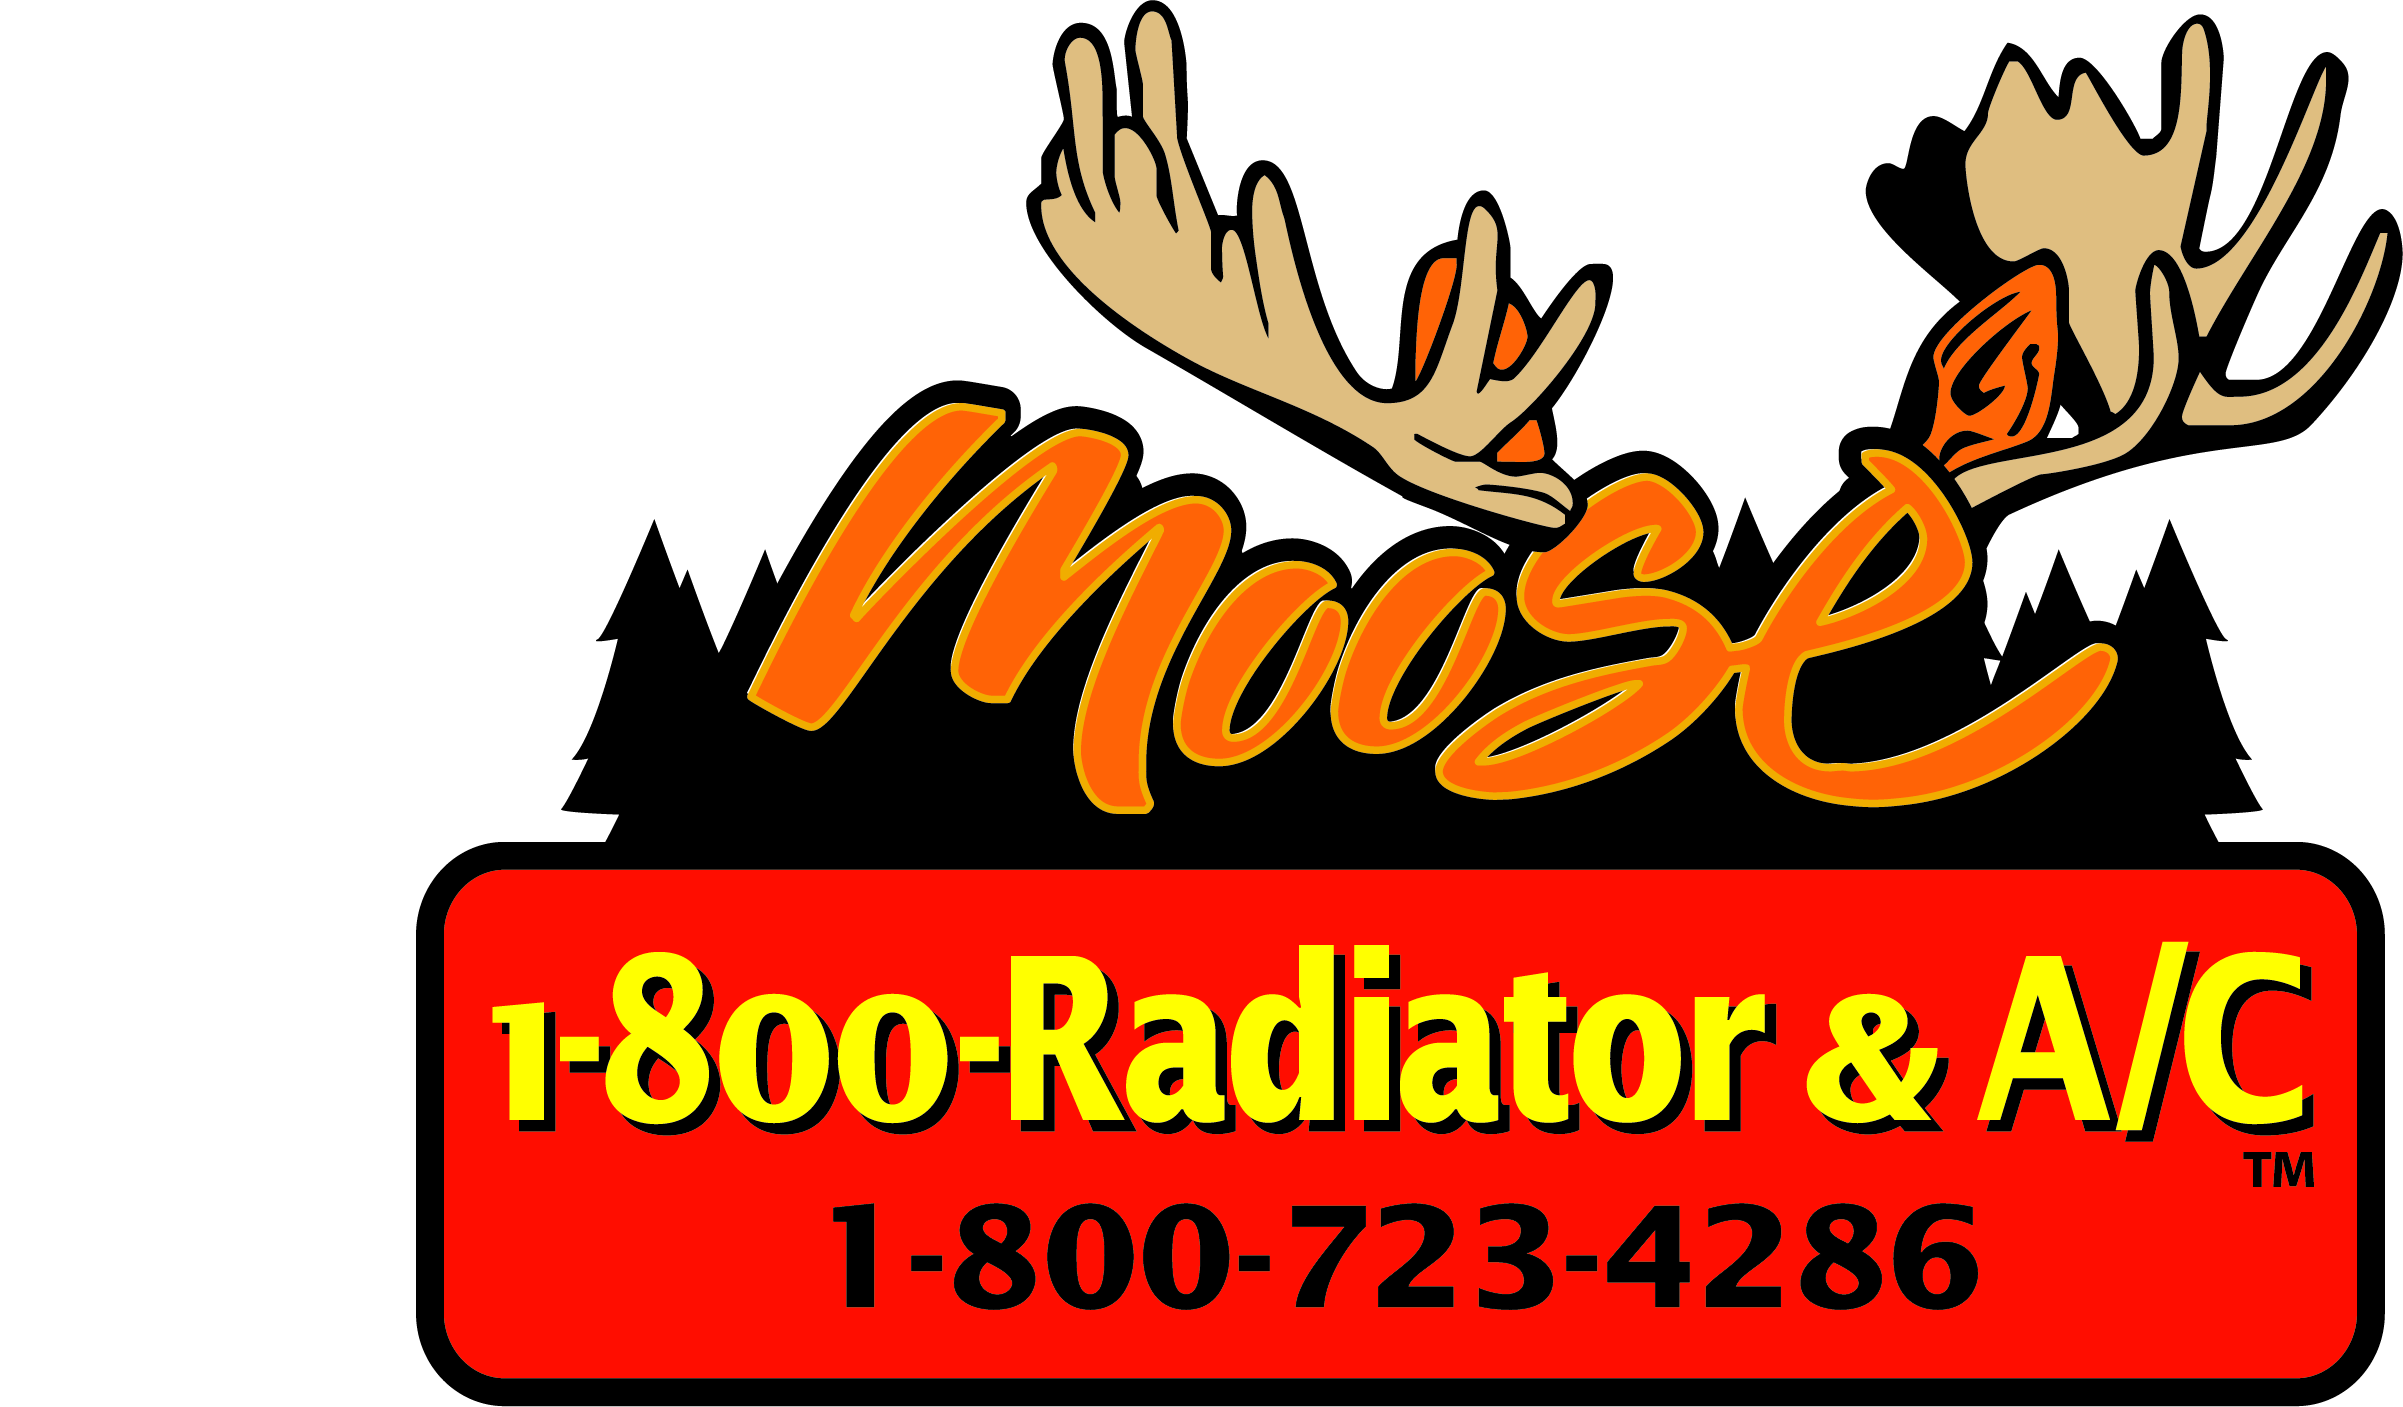 Moose Radiator